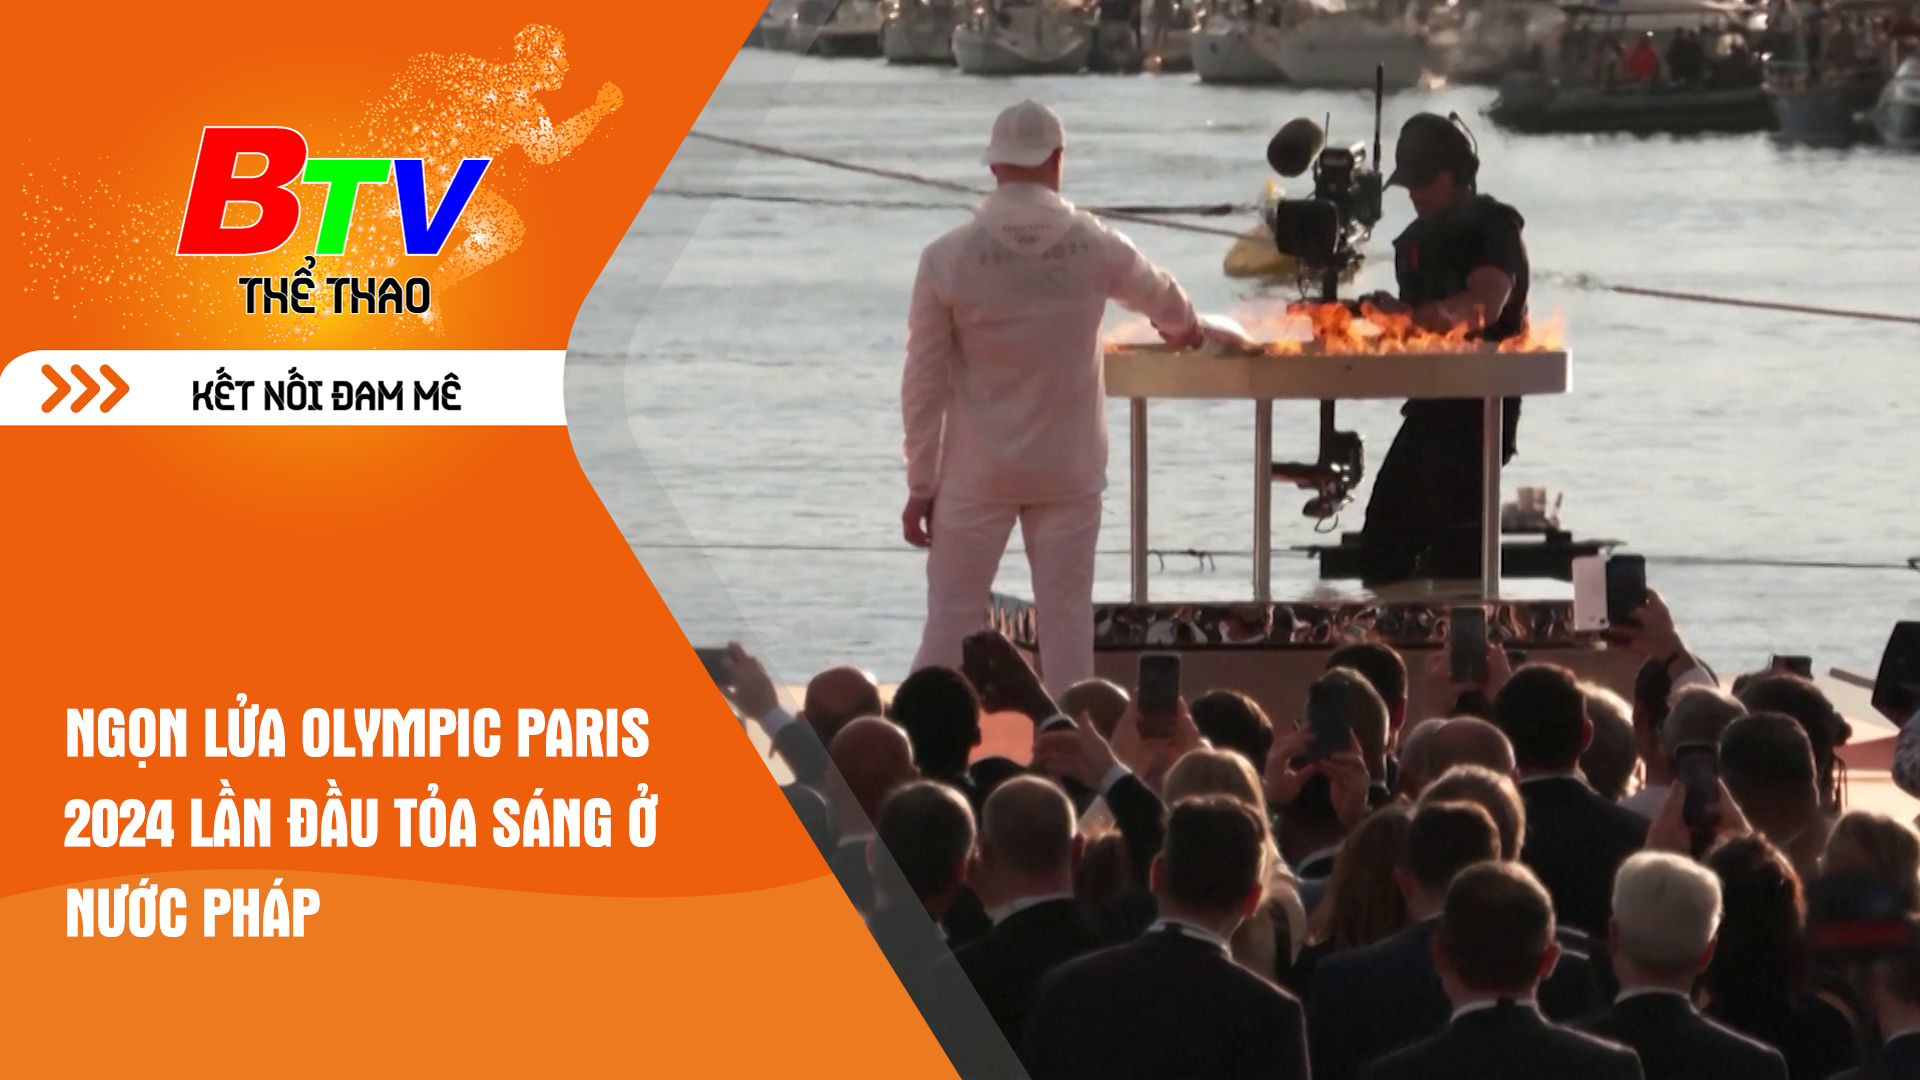 Ngọn lửa Olympic Paris 2024 lần đầu tỏa sáng ở nước Pháp | Tin Thể thao 24h